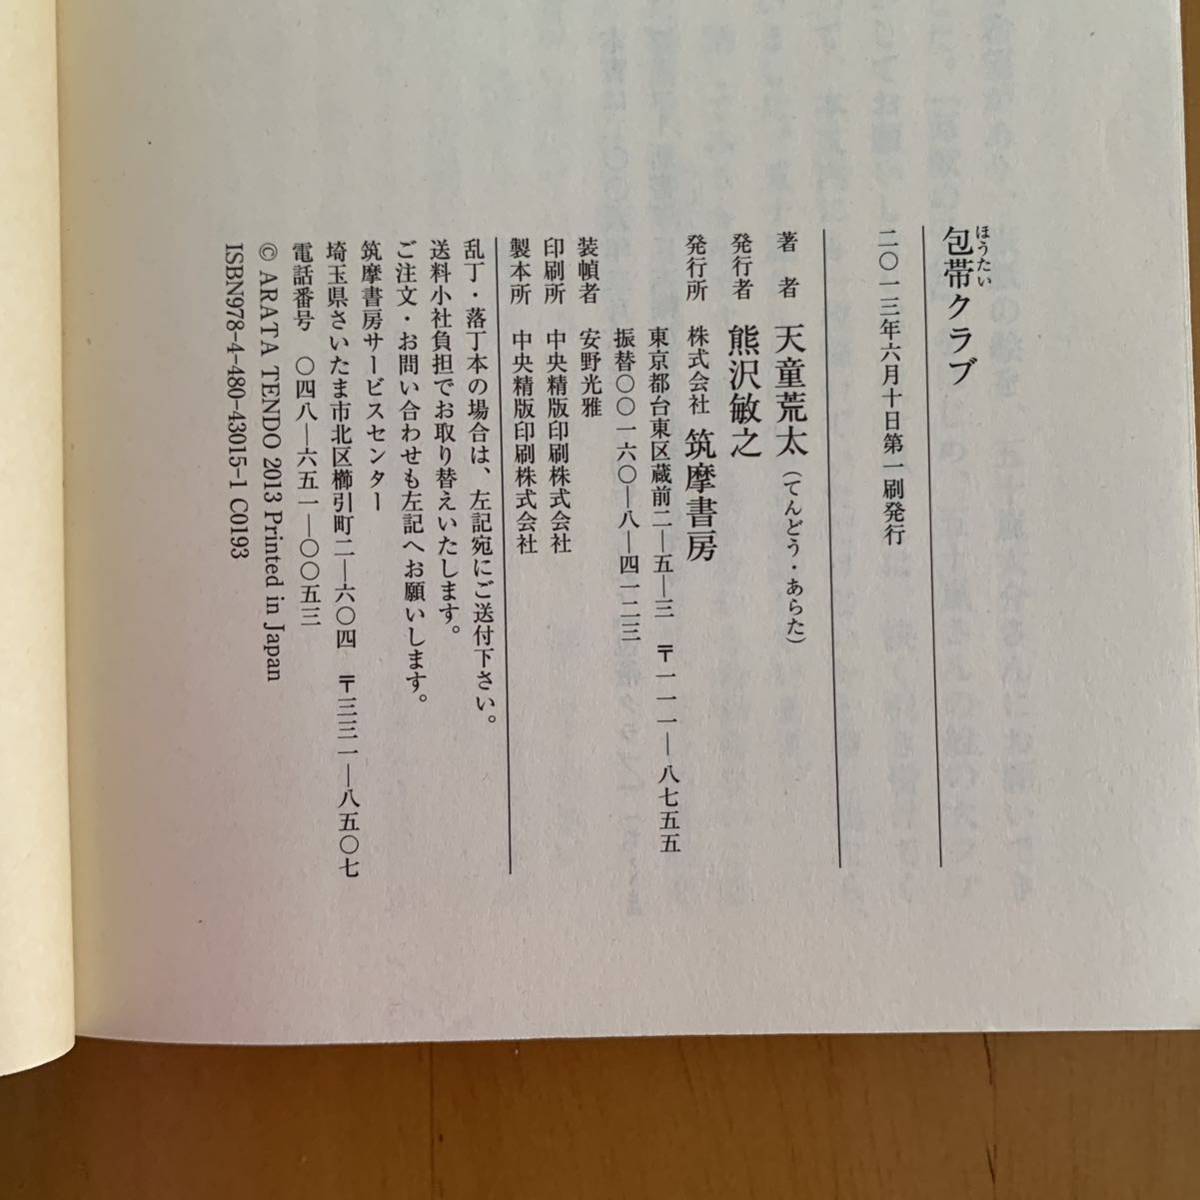  перевязочный материал Club Tendo Arata библиотека книга@. приятный super . Ishihara Satomi фильм . Chikuma библиотека 